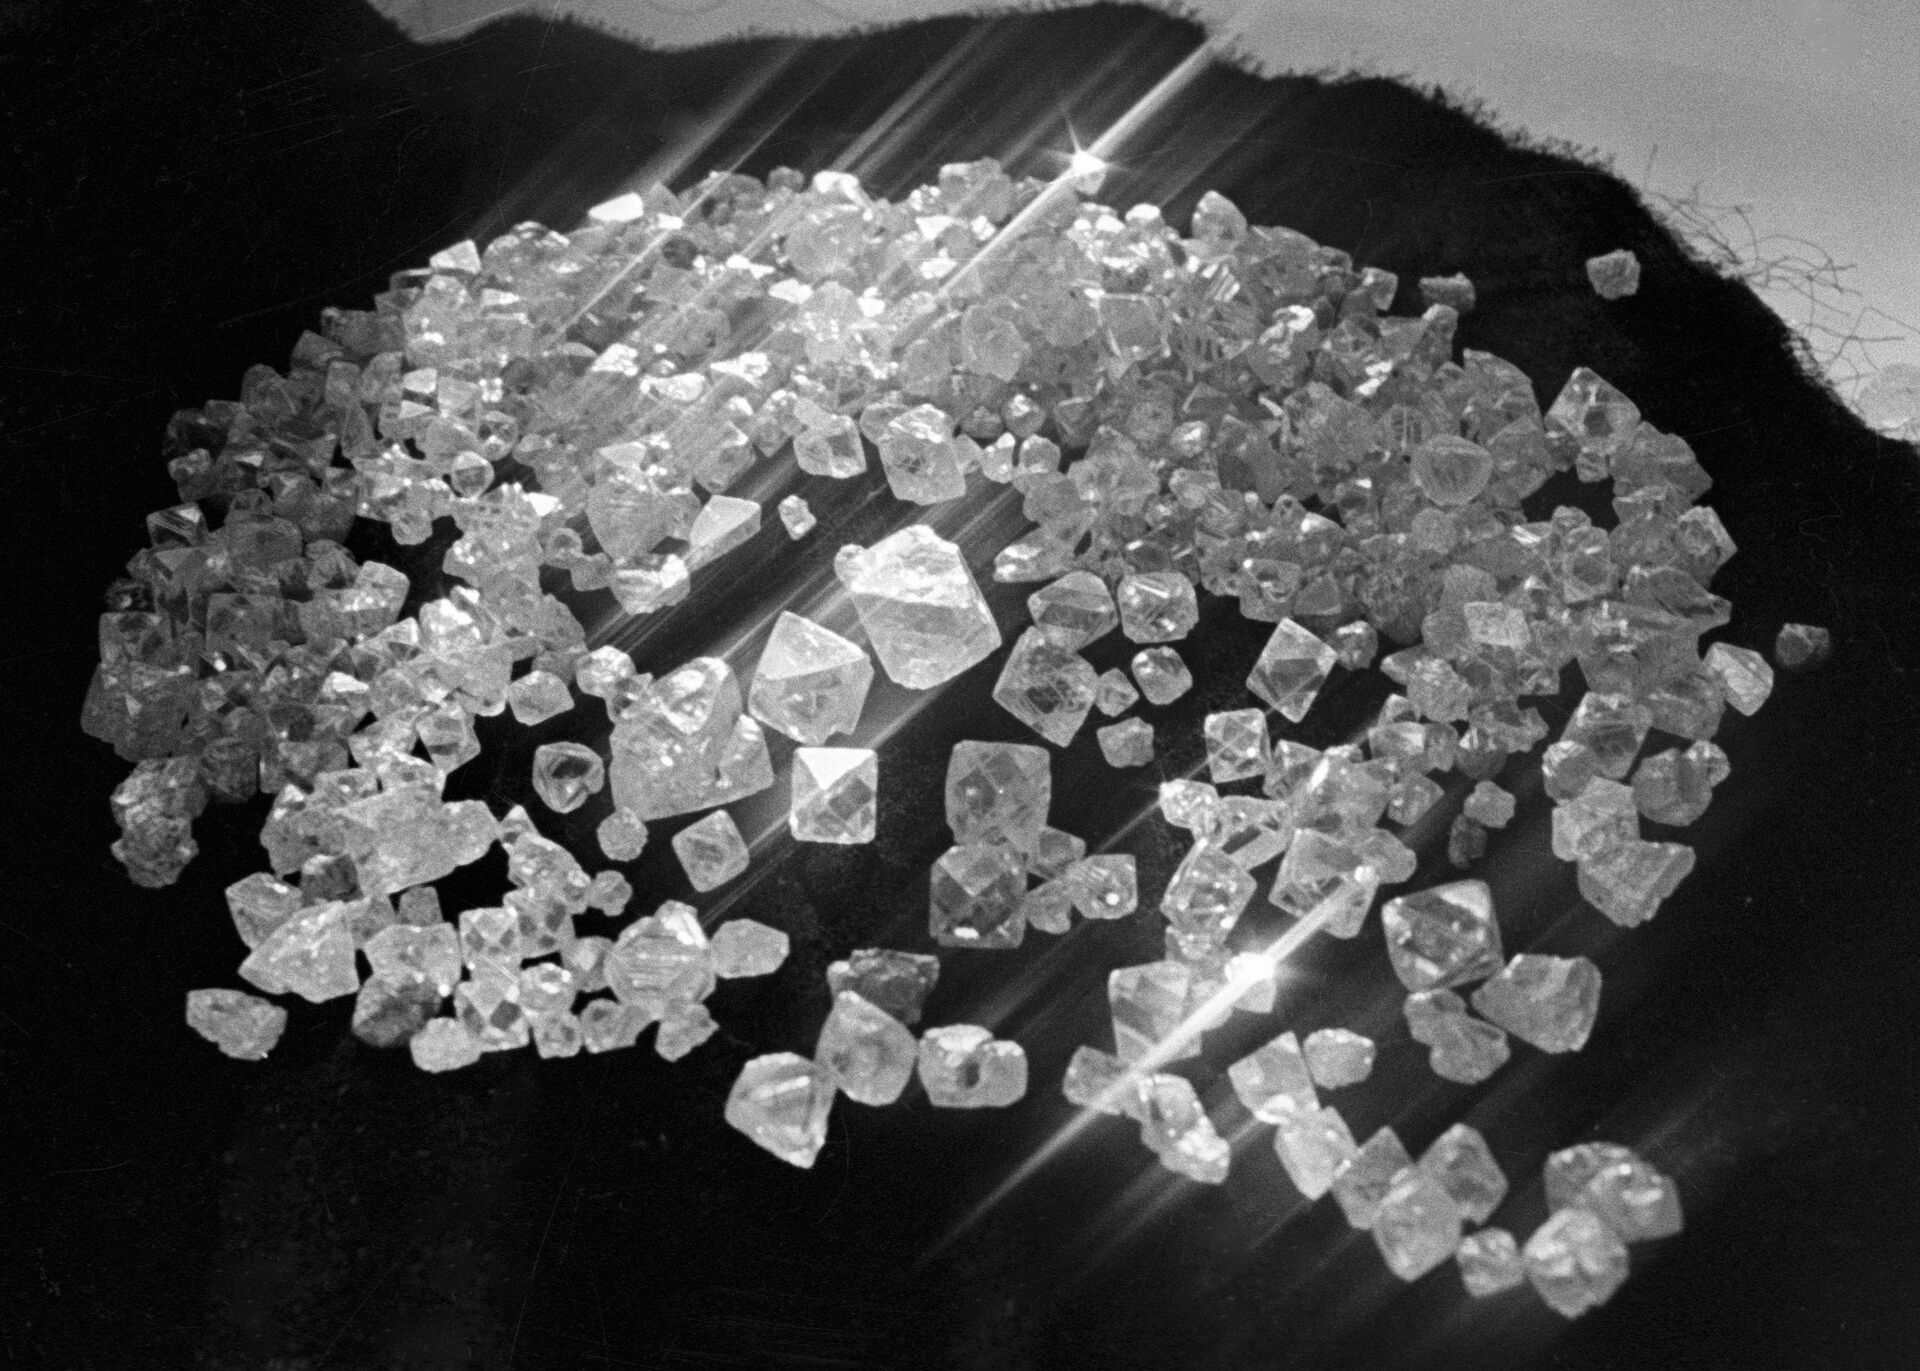 Cientistas descobrem diamantes provenientes de reciclagem de carbono orgânico no manto da Terra - Sputnik Brasil, 1920, 24.08.2021